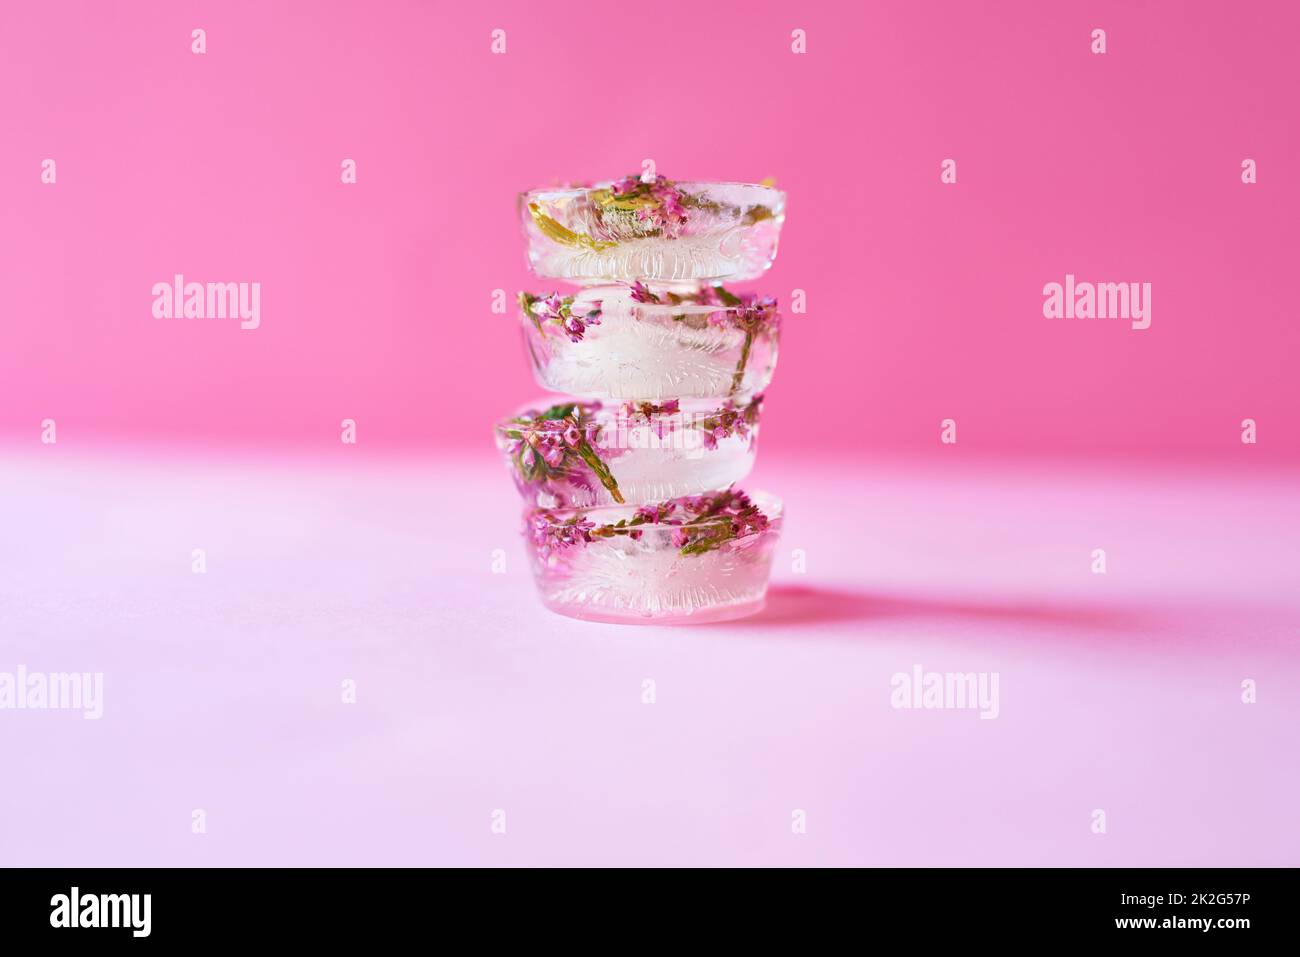 Cet été, soyez créatif avec votre glace. Photo studio de fleurs congelées dans des blocs de glace sur fond rose. Banque D'Images